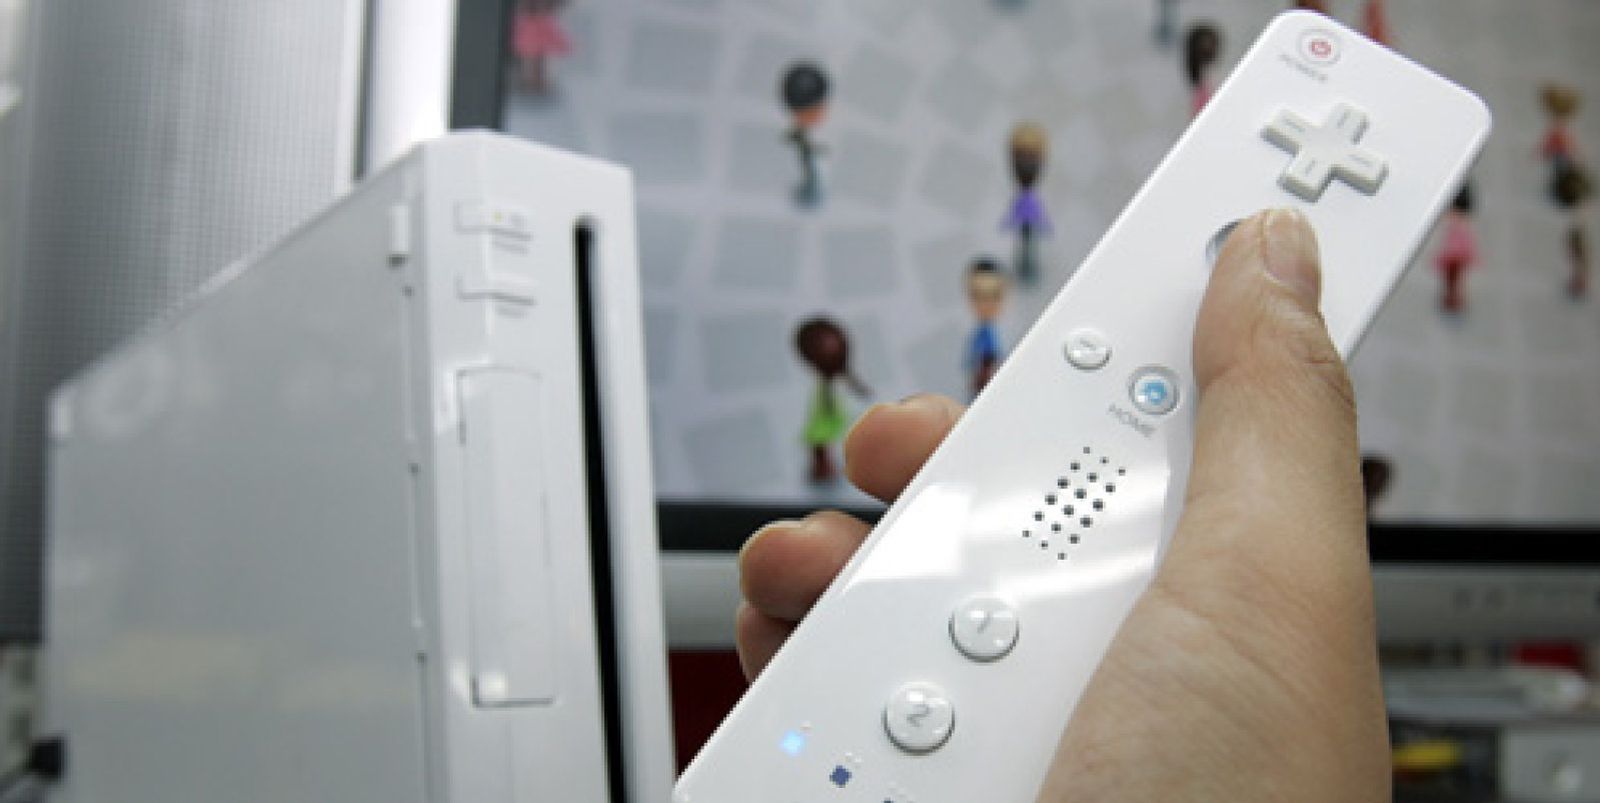 Foto: ¿Nueva Wii estas Navidades?